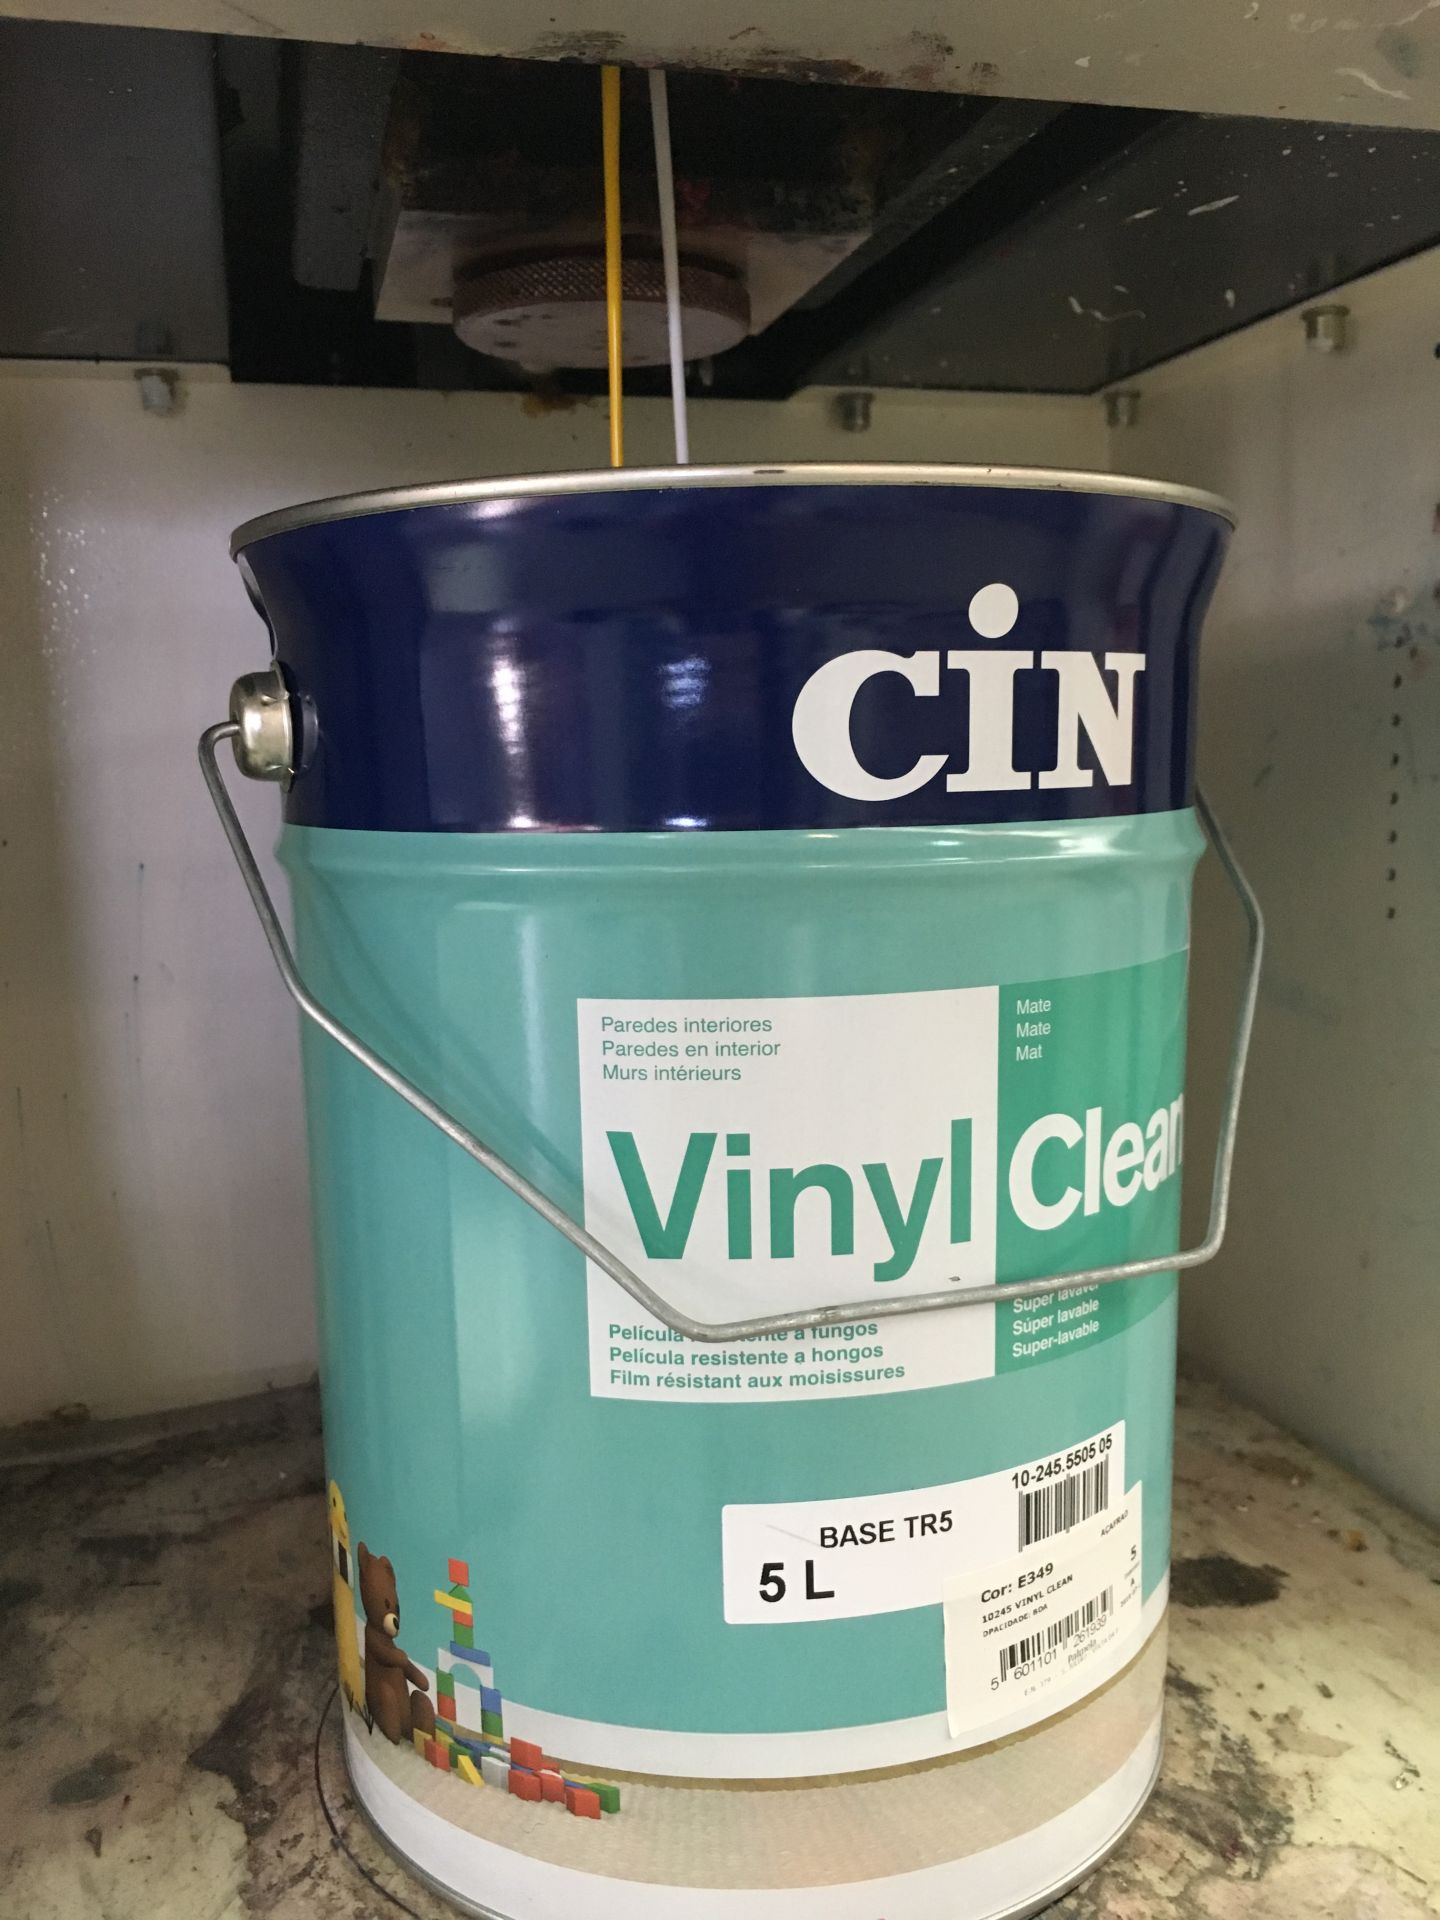 VinylClean CIN